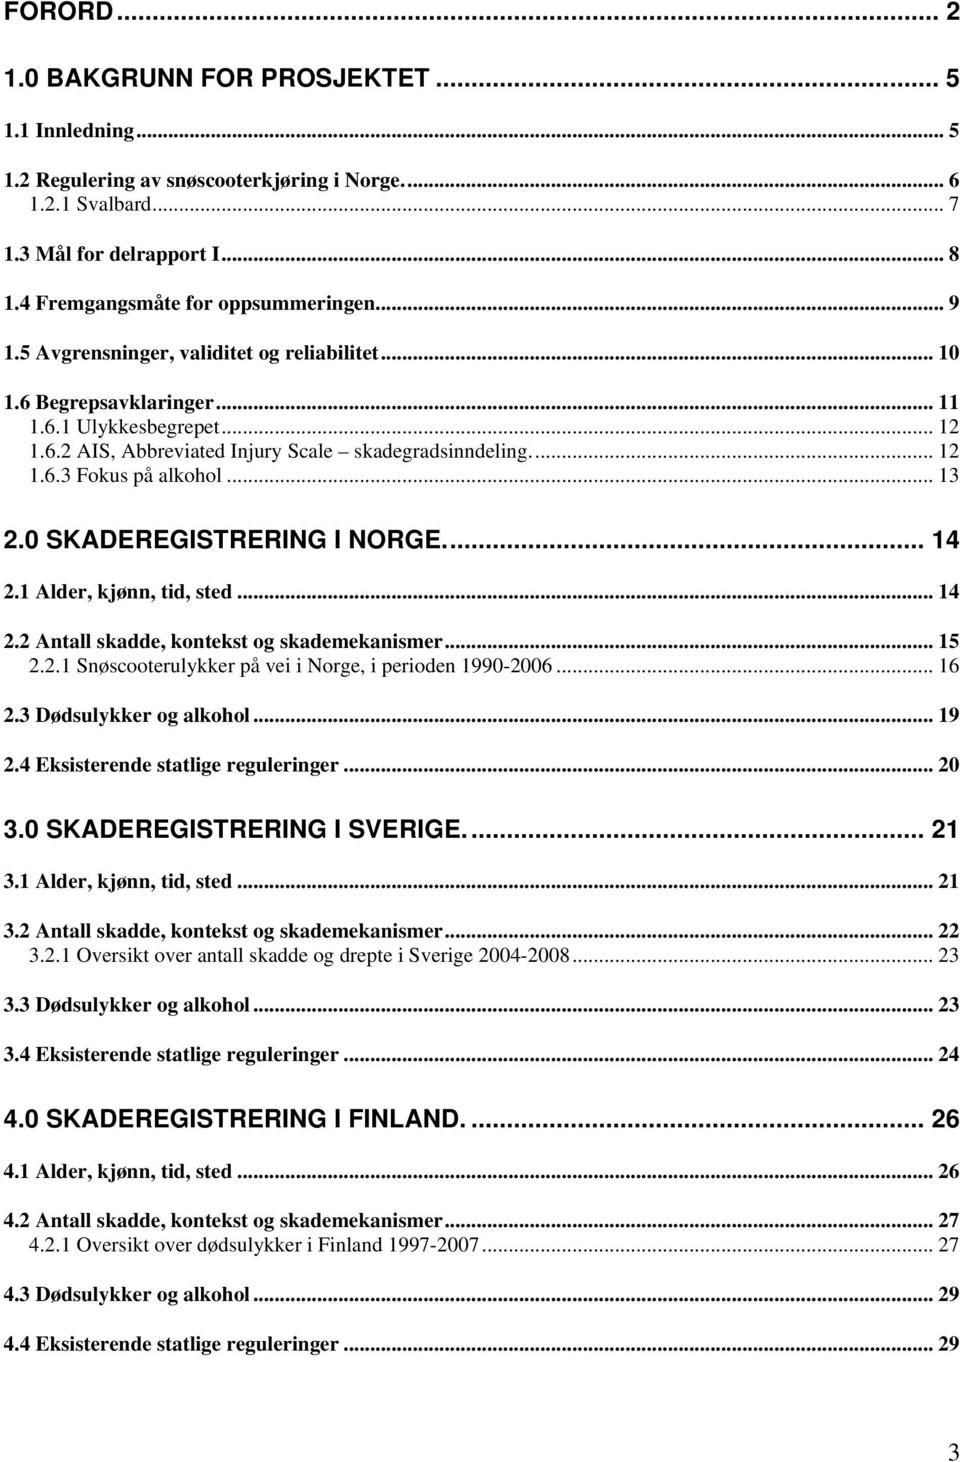 .. 12 1.6.3 Fokus på alkohol... 13 2.0 SKADEREGISTRERING I NORGE... 14 2.1 Alder, kjønn, tid, sted... 14 2.2 Antall skadde, kontekst og skademekanismer... 15 2.2.1 Snøscooterulykker på vei i Norge, i perioden 1990-2006.